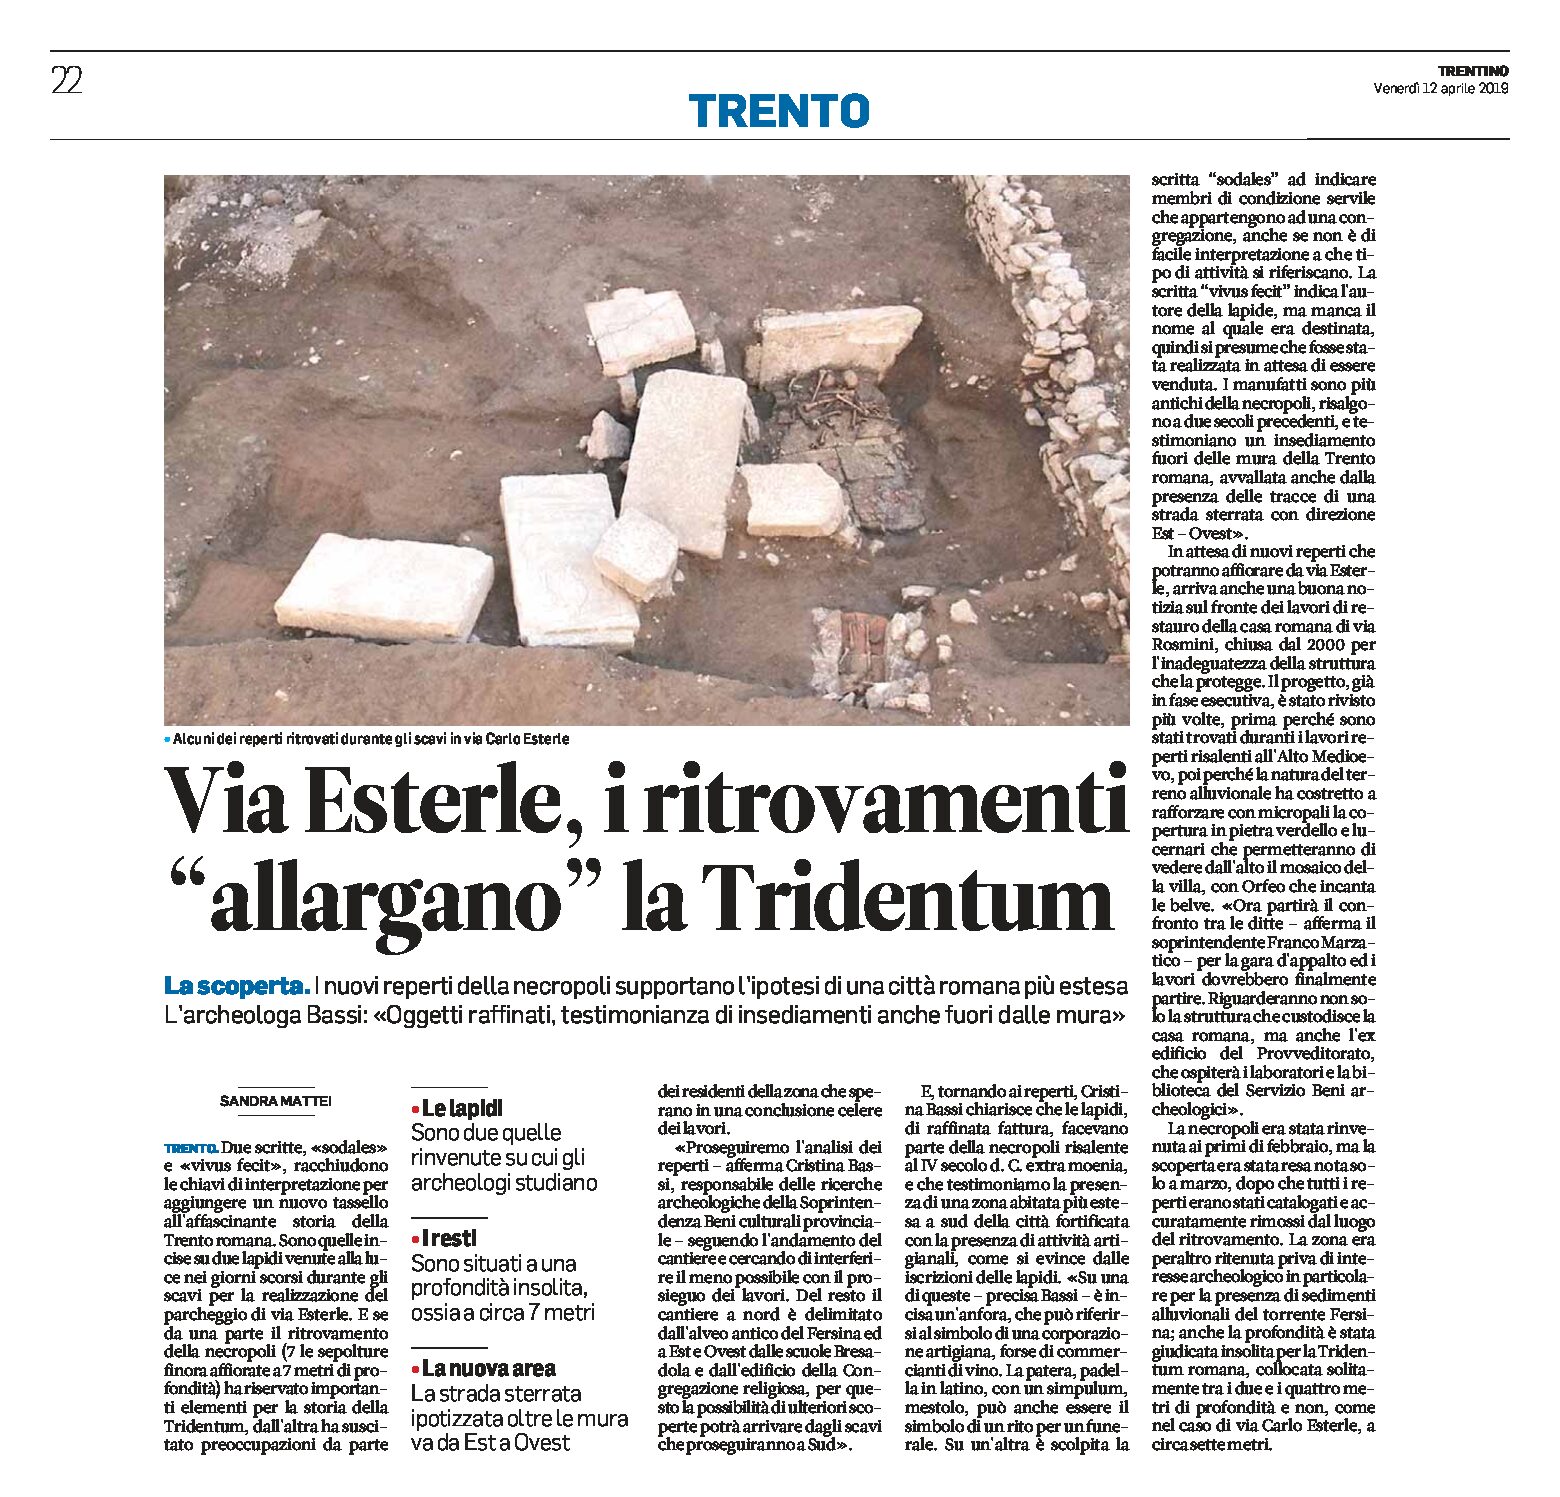 Trento, via Esterle: i ritrovamenti “allargano” la Tridentum